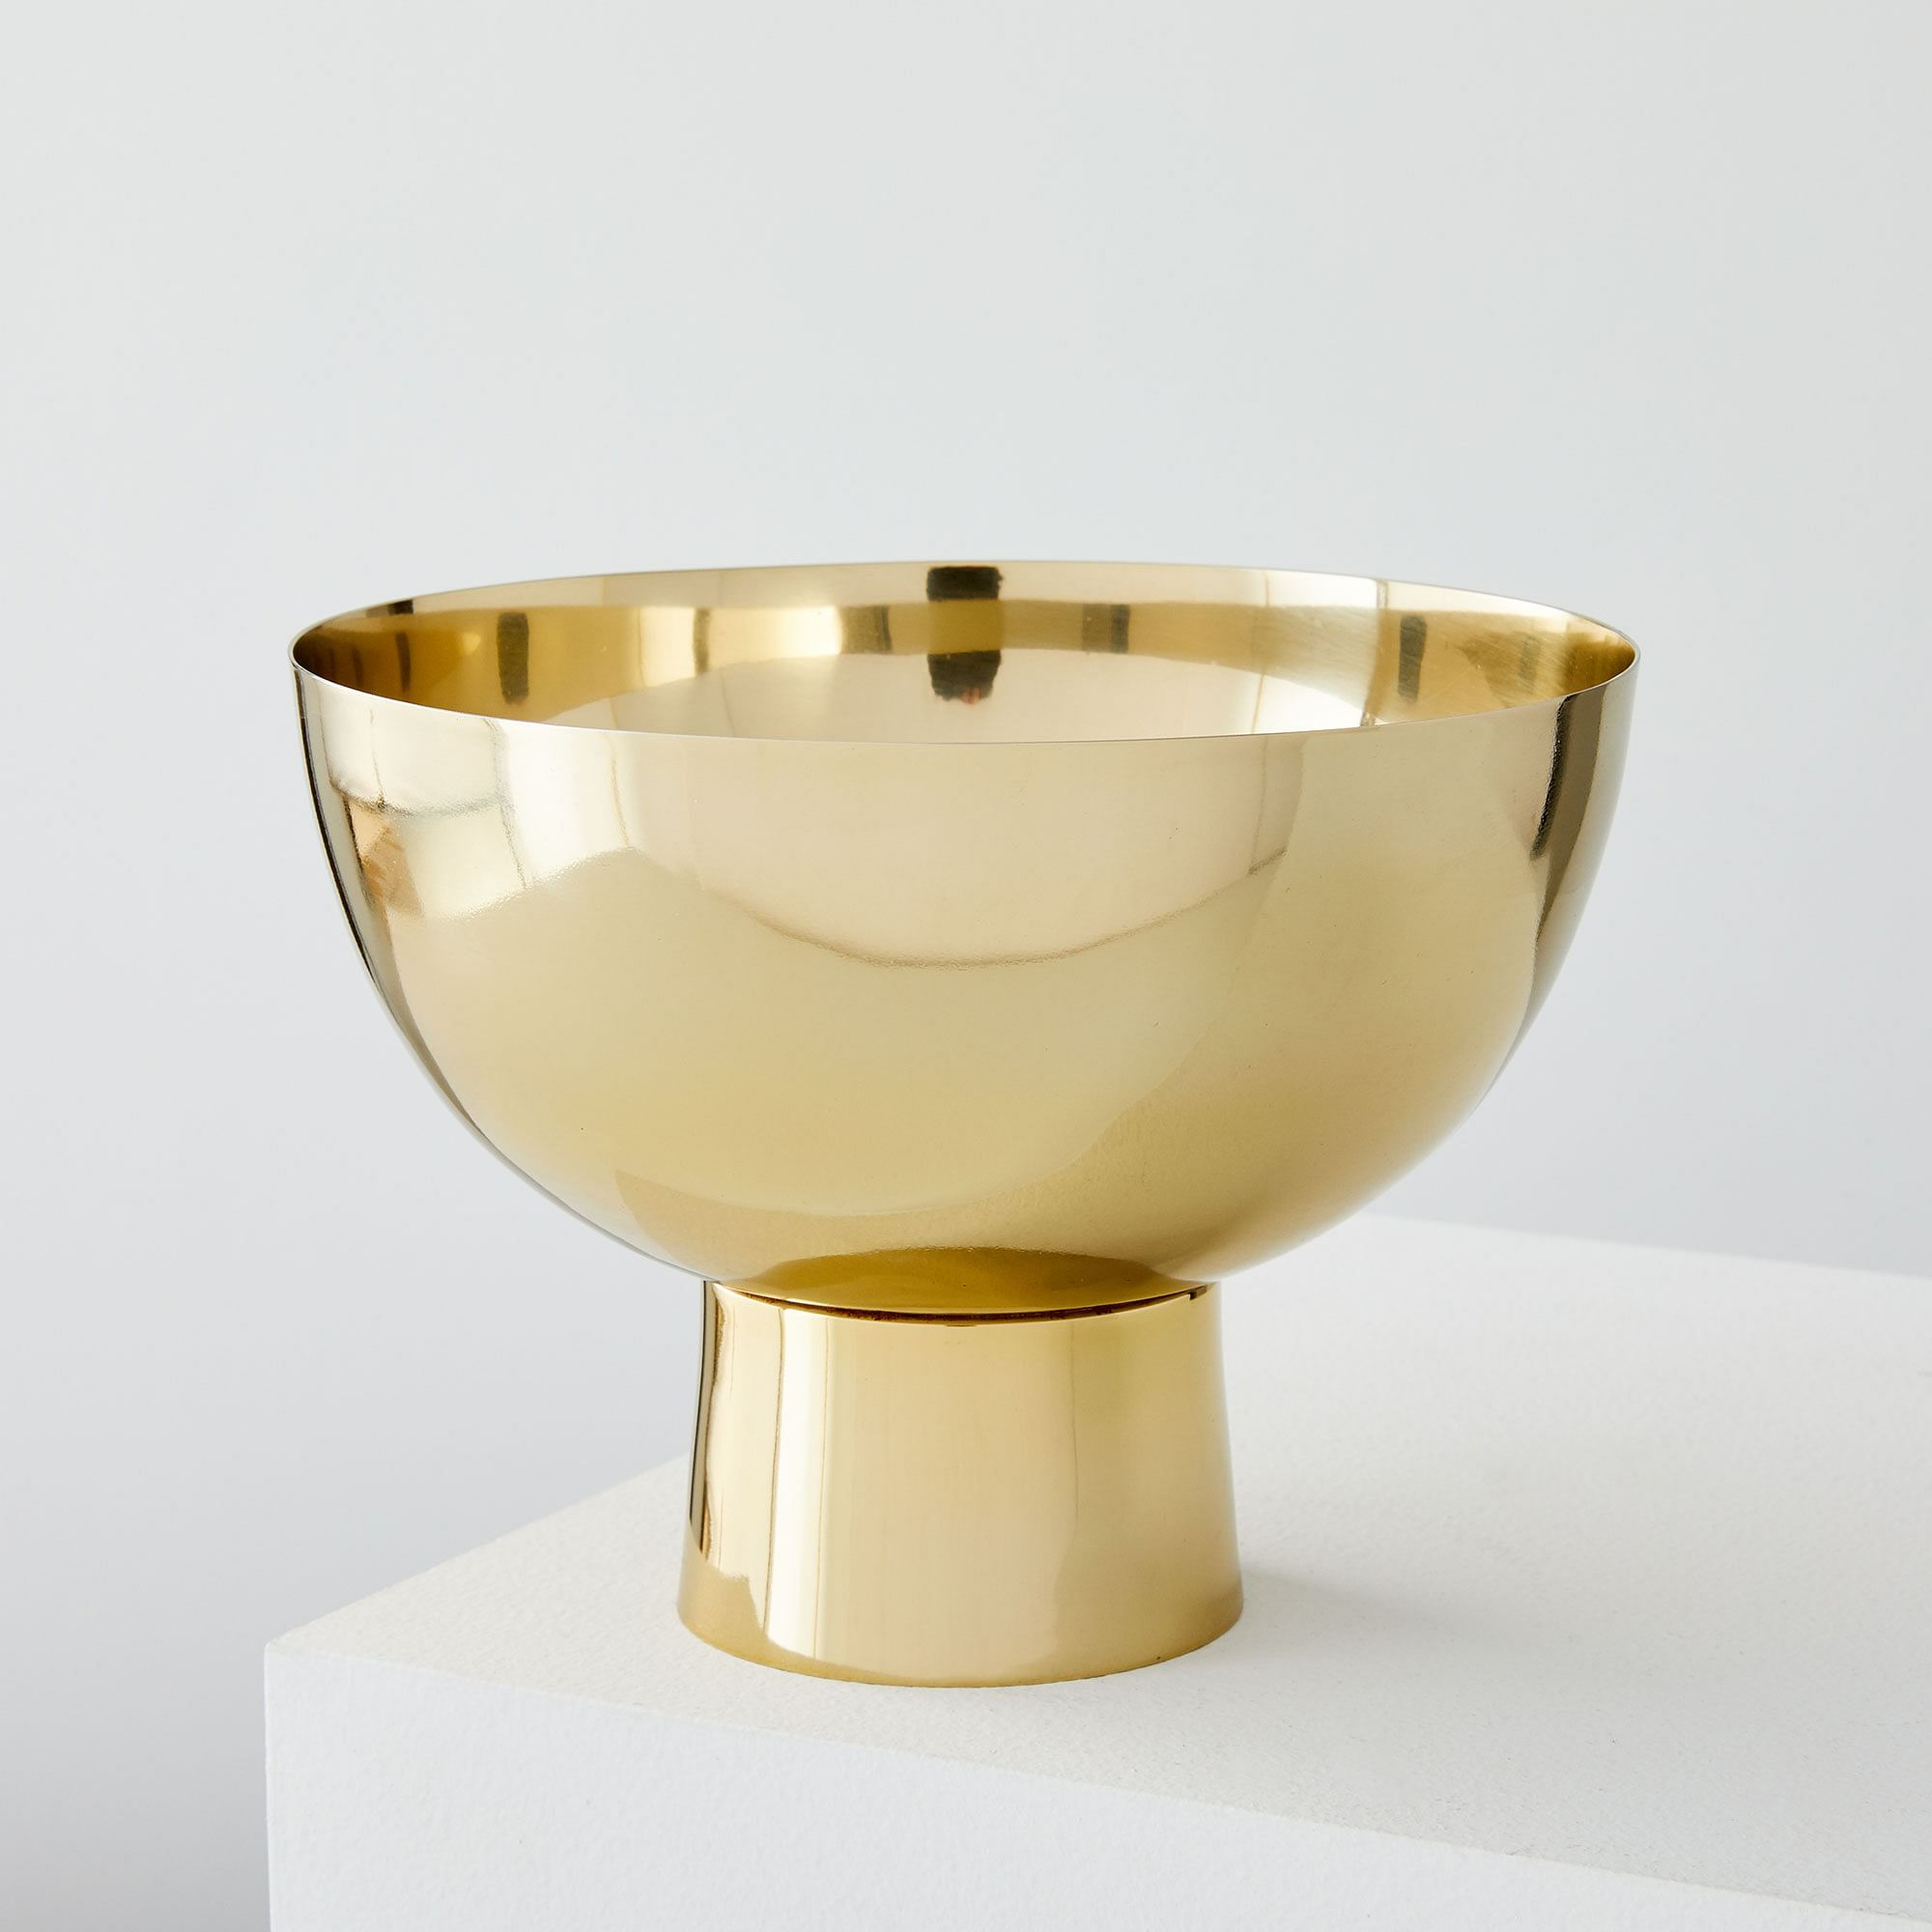 Foundation Brass Vases , Large Footed Bowl - West Elm